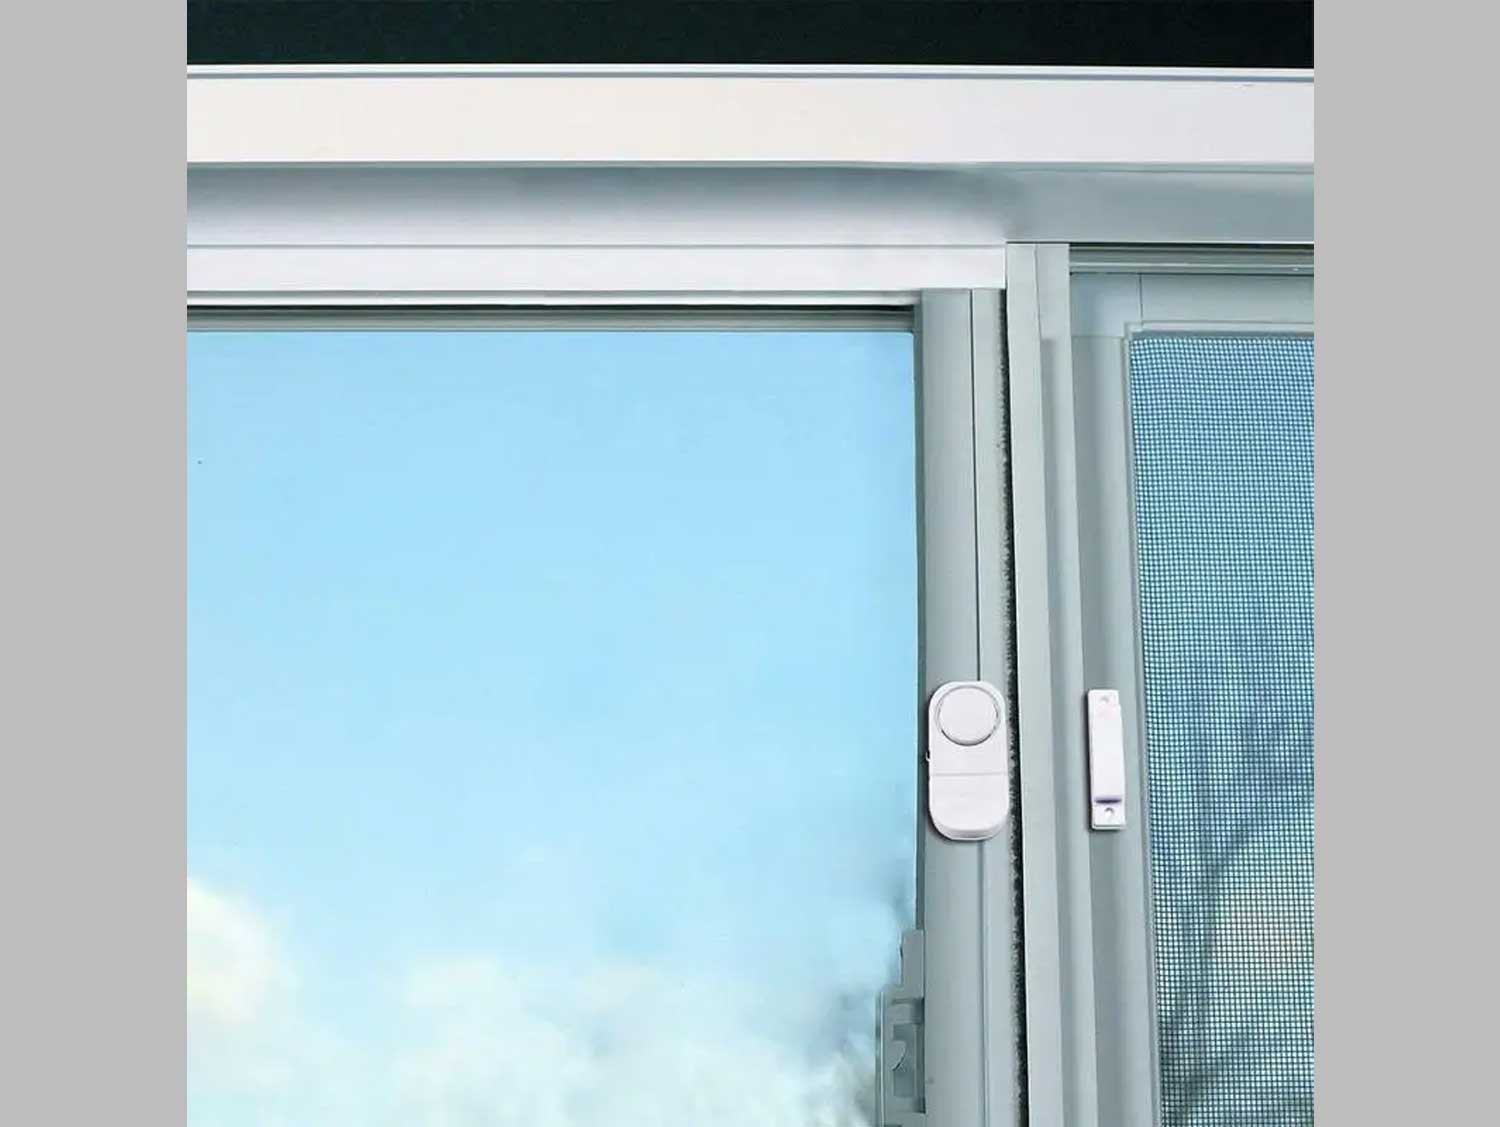 Wireless Door Window Sensor Security Alarm Security System